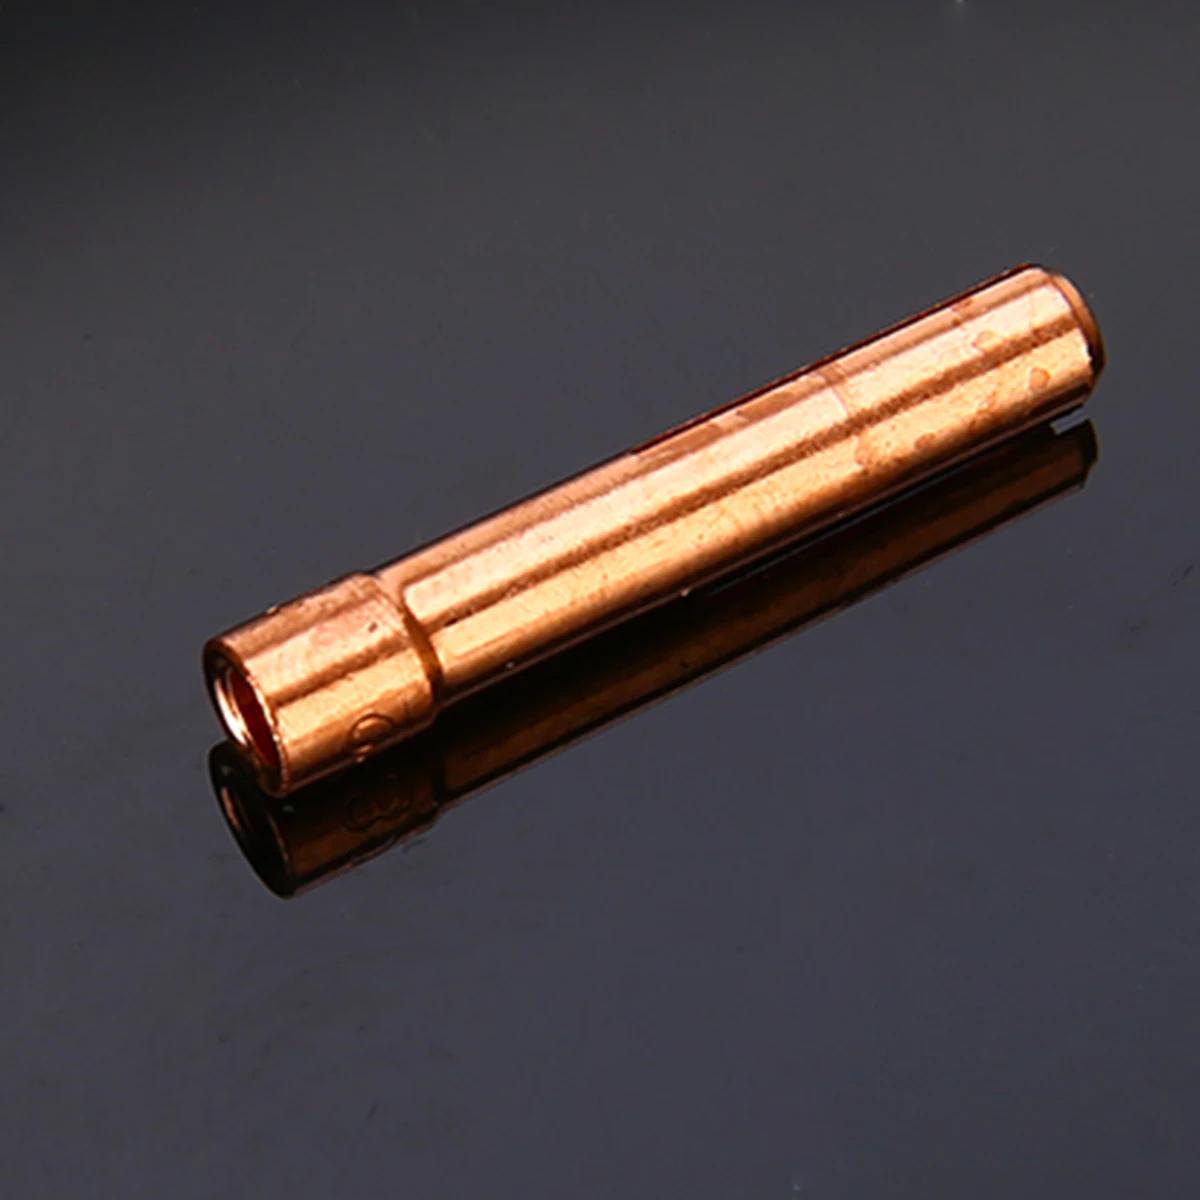 7 шт. горелка для сварки вольфрамовым электродом сварки комплект короткие mayitr #12 Pyrex сварки набор подшипников цанги тела газа объектив 2,4 мм